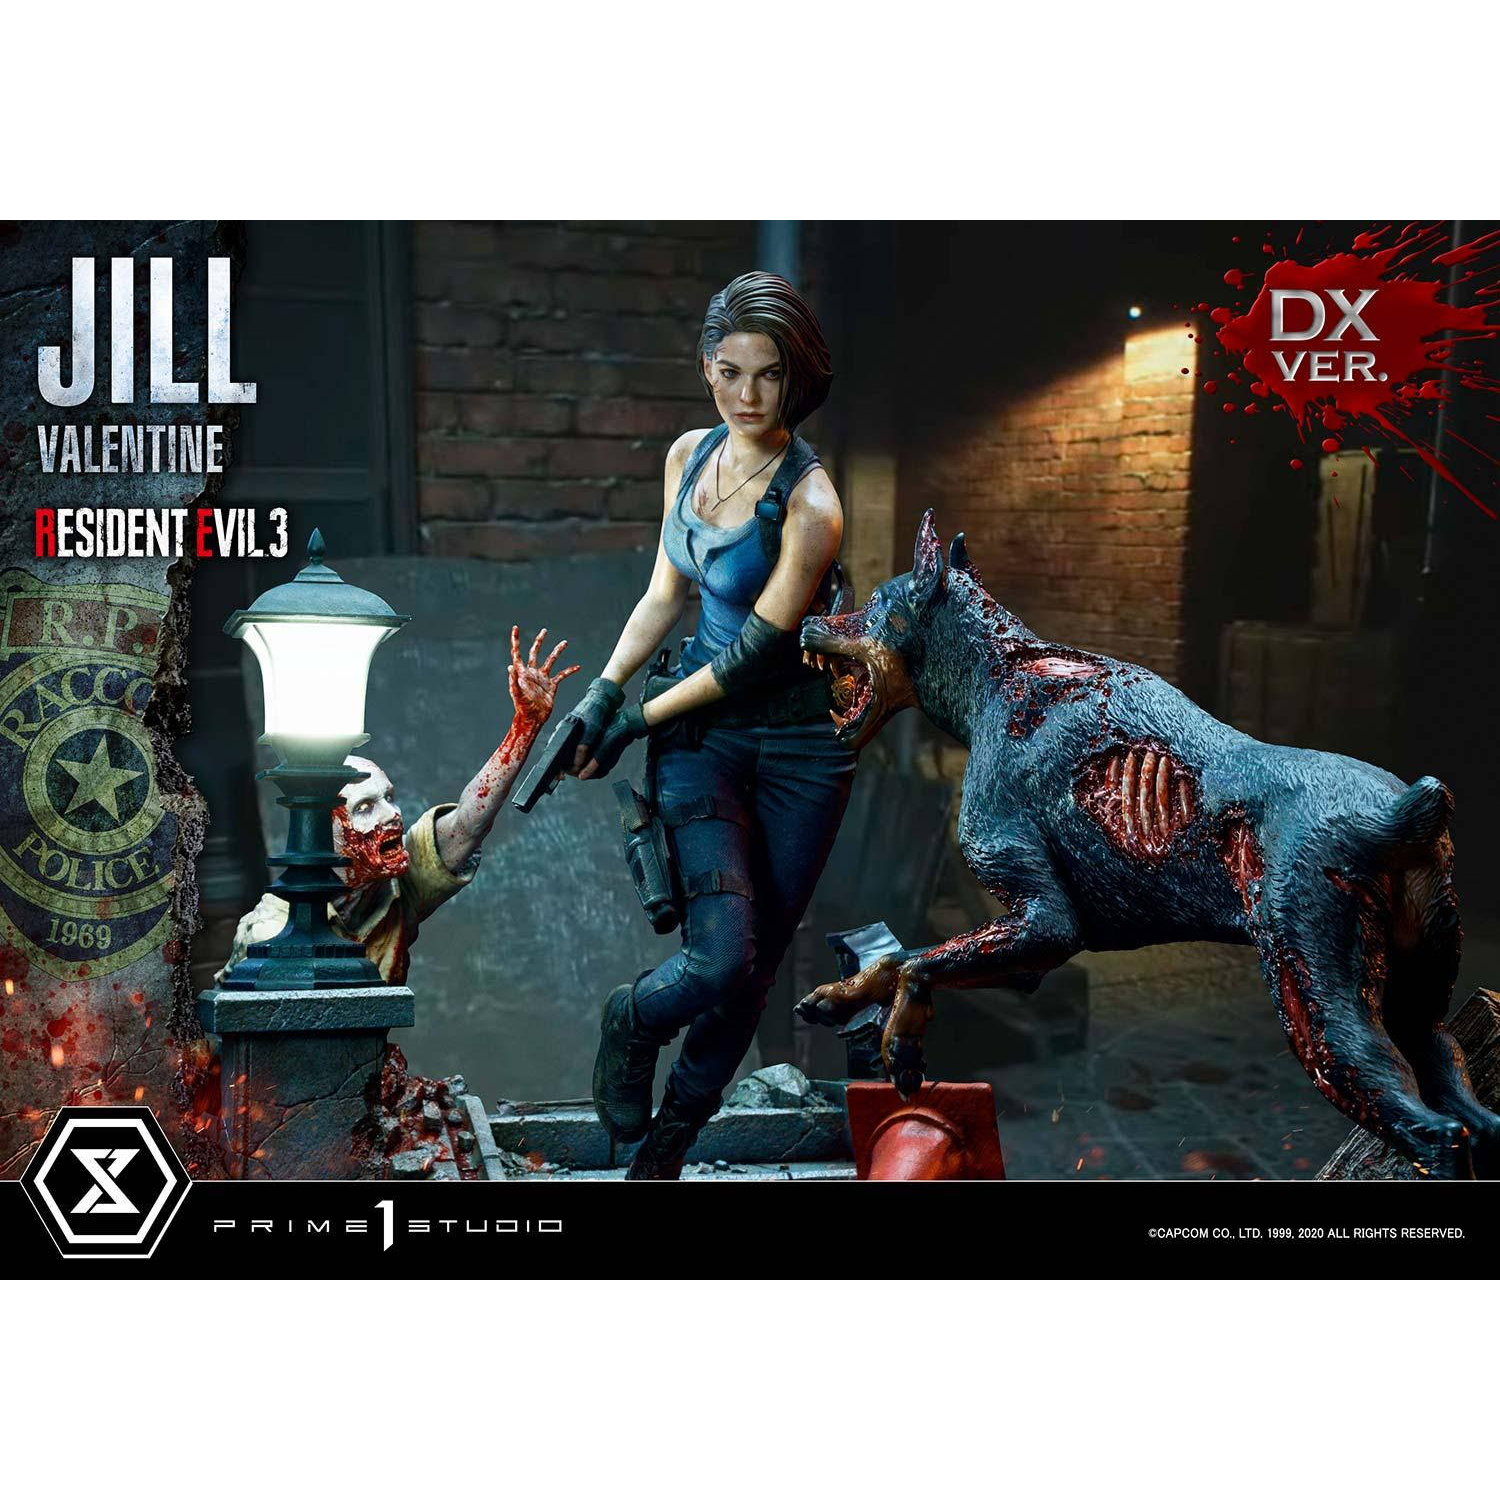 Jill Valentine Quarter Scale Statue by Prime 1 Studio